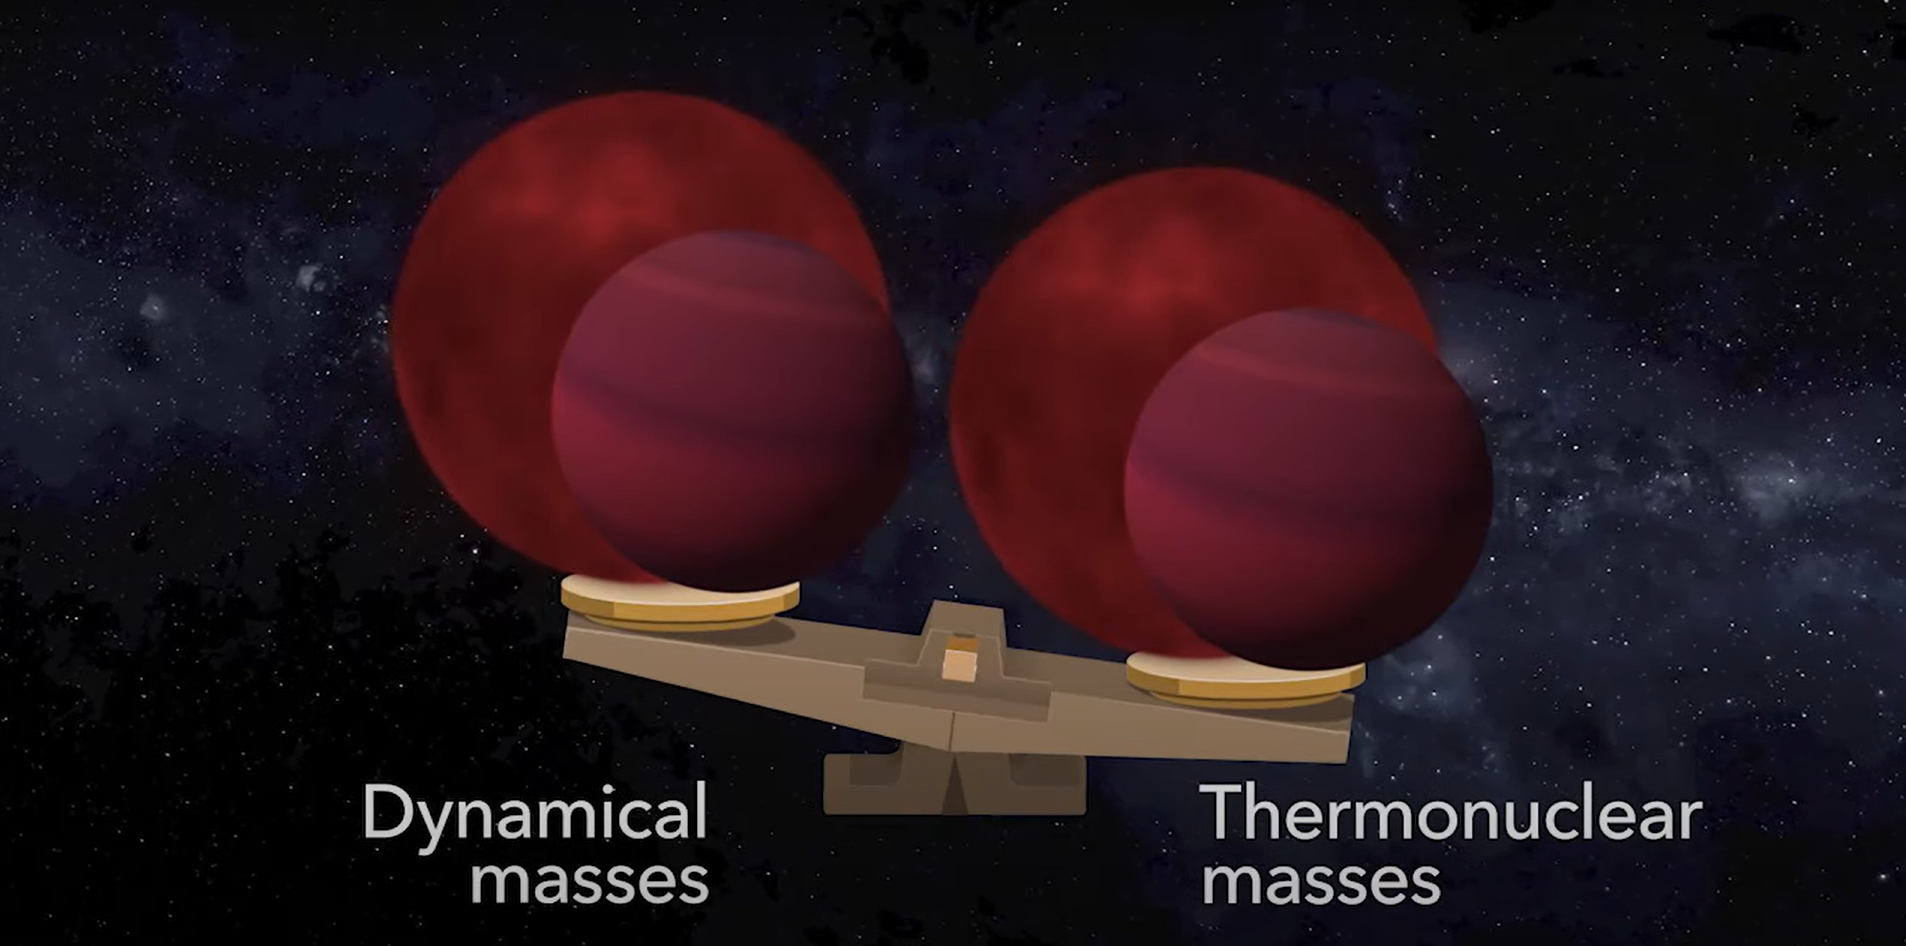 Masy dynamiczne układów podwójnych są wyznaczane na podstawie ruchów orbitalnych składników, korzystając z praw Keplera. Te masy są bardzo dokładnie wyznaczone i powinny dobrze zgadzać się z masami termonuklearnymi oszacowanymi na podstawie reakcji jądrowych zachodzących we wnętrzu brązowych karłów. Jednak, gdy porównamy masy dynamiczne z masami termonuklearnymi, to równowaga jest zachwiana jak na powyższym rysunku – co oznacza, że nie do końca rozumiemy jeszcze właściwości tych „pod-gwiazdowych” obiektów. Źródło: Gabriel Pérez Díaz, SMM (IAC)